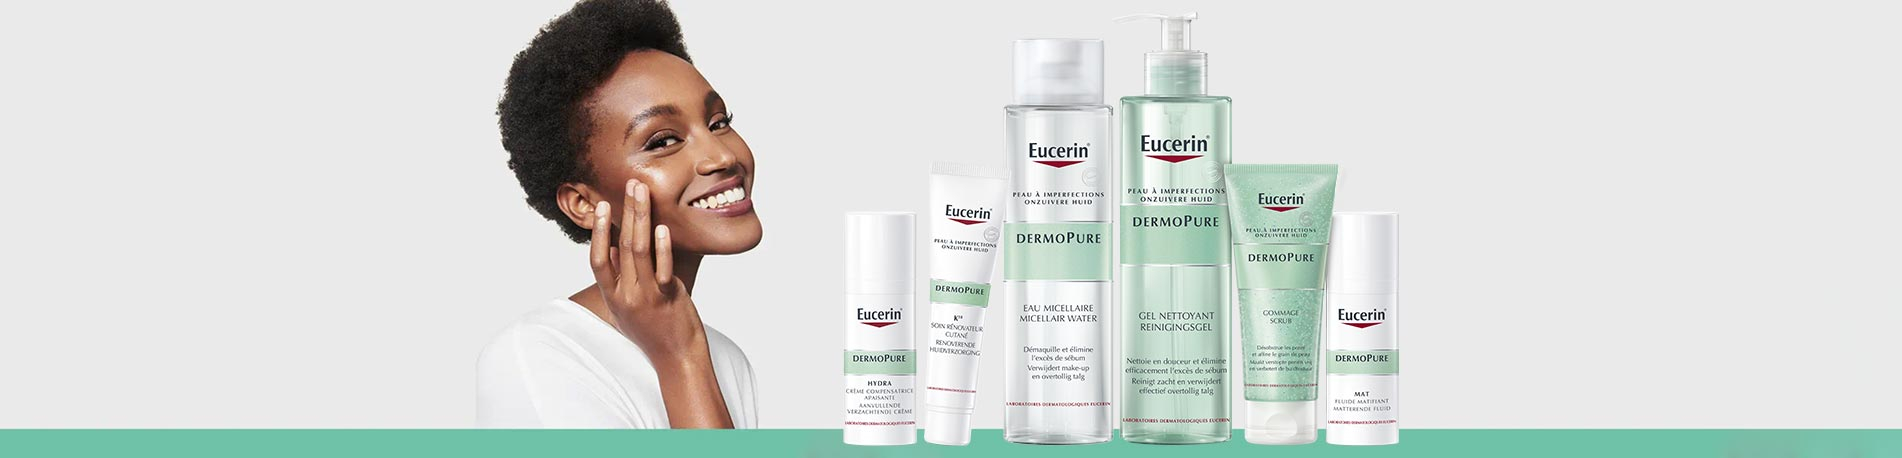 Prendre soin de sa peau grasse à tendance acnéique avec la gamme Dermopure d’Eucerin